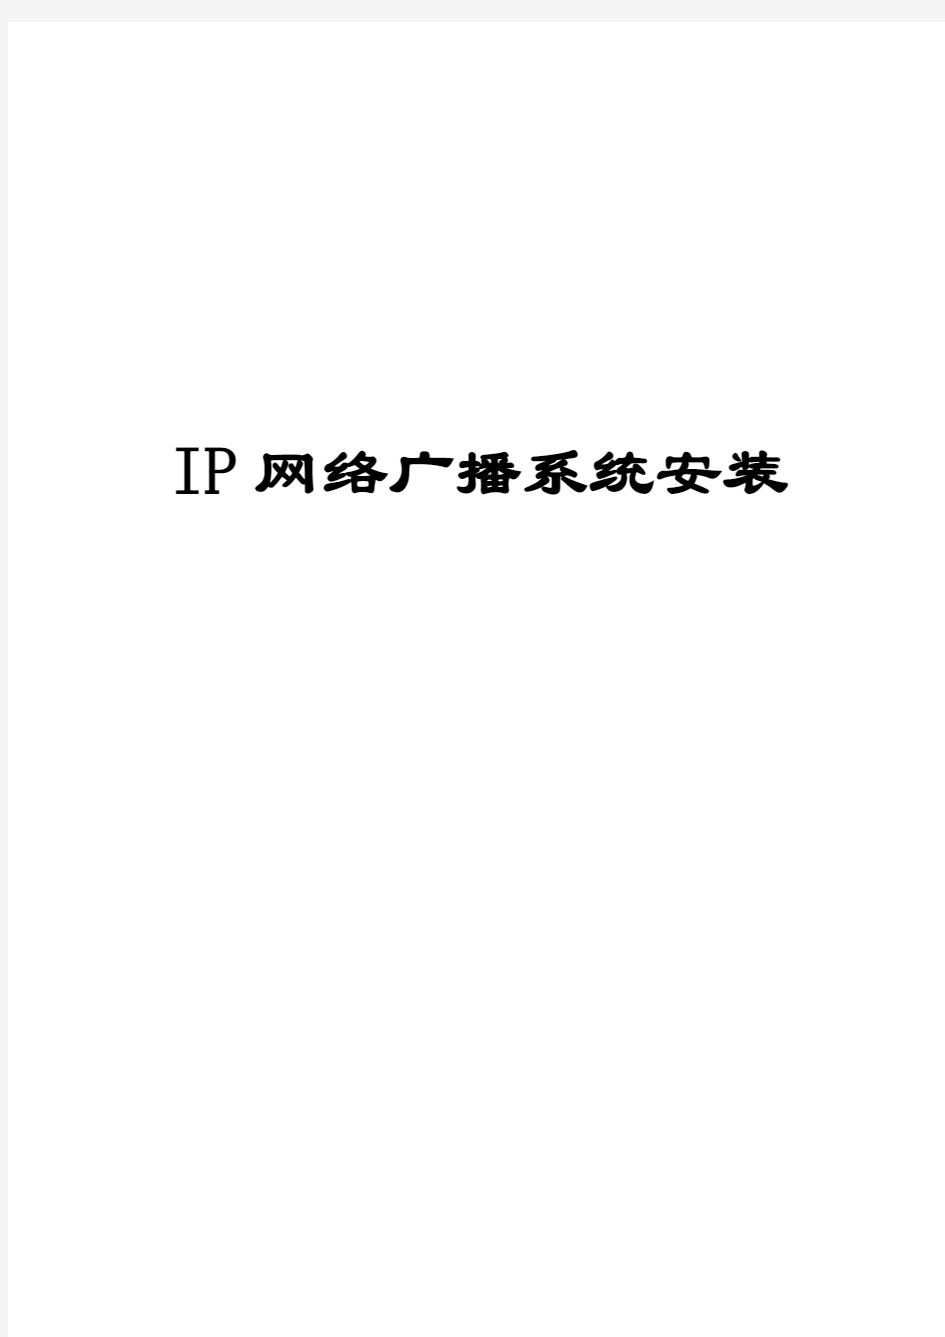 IP网络广播系统调试流程及调试中的注意事项